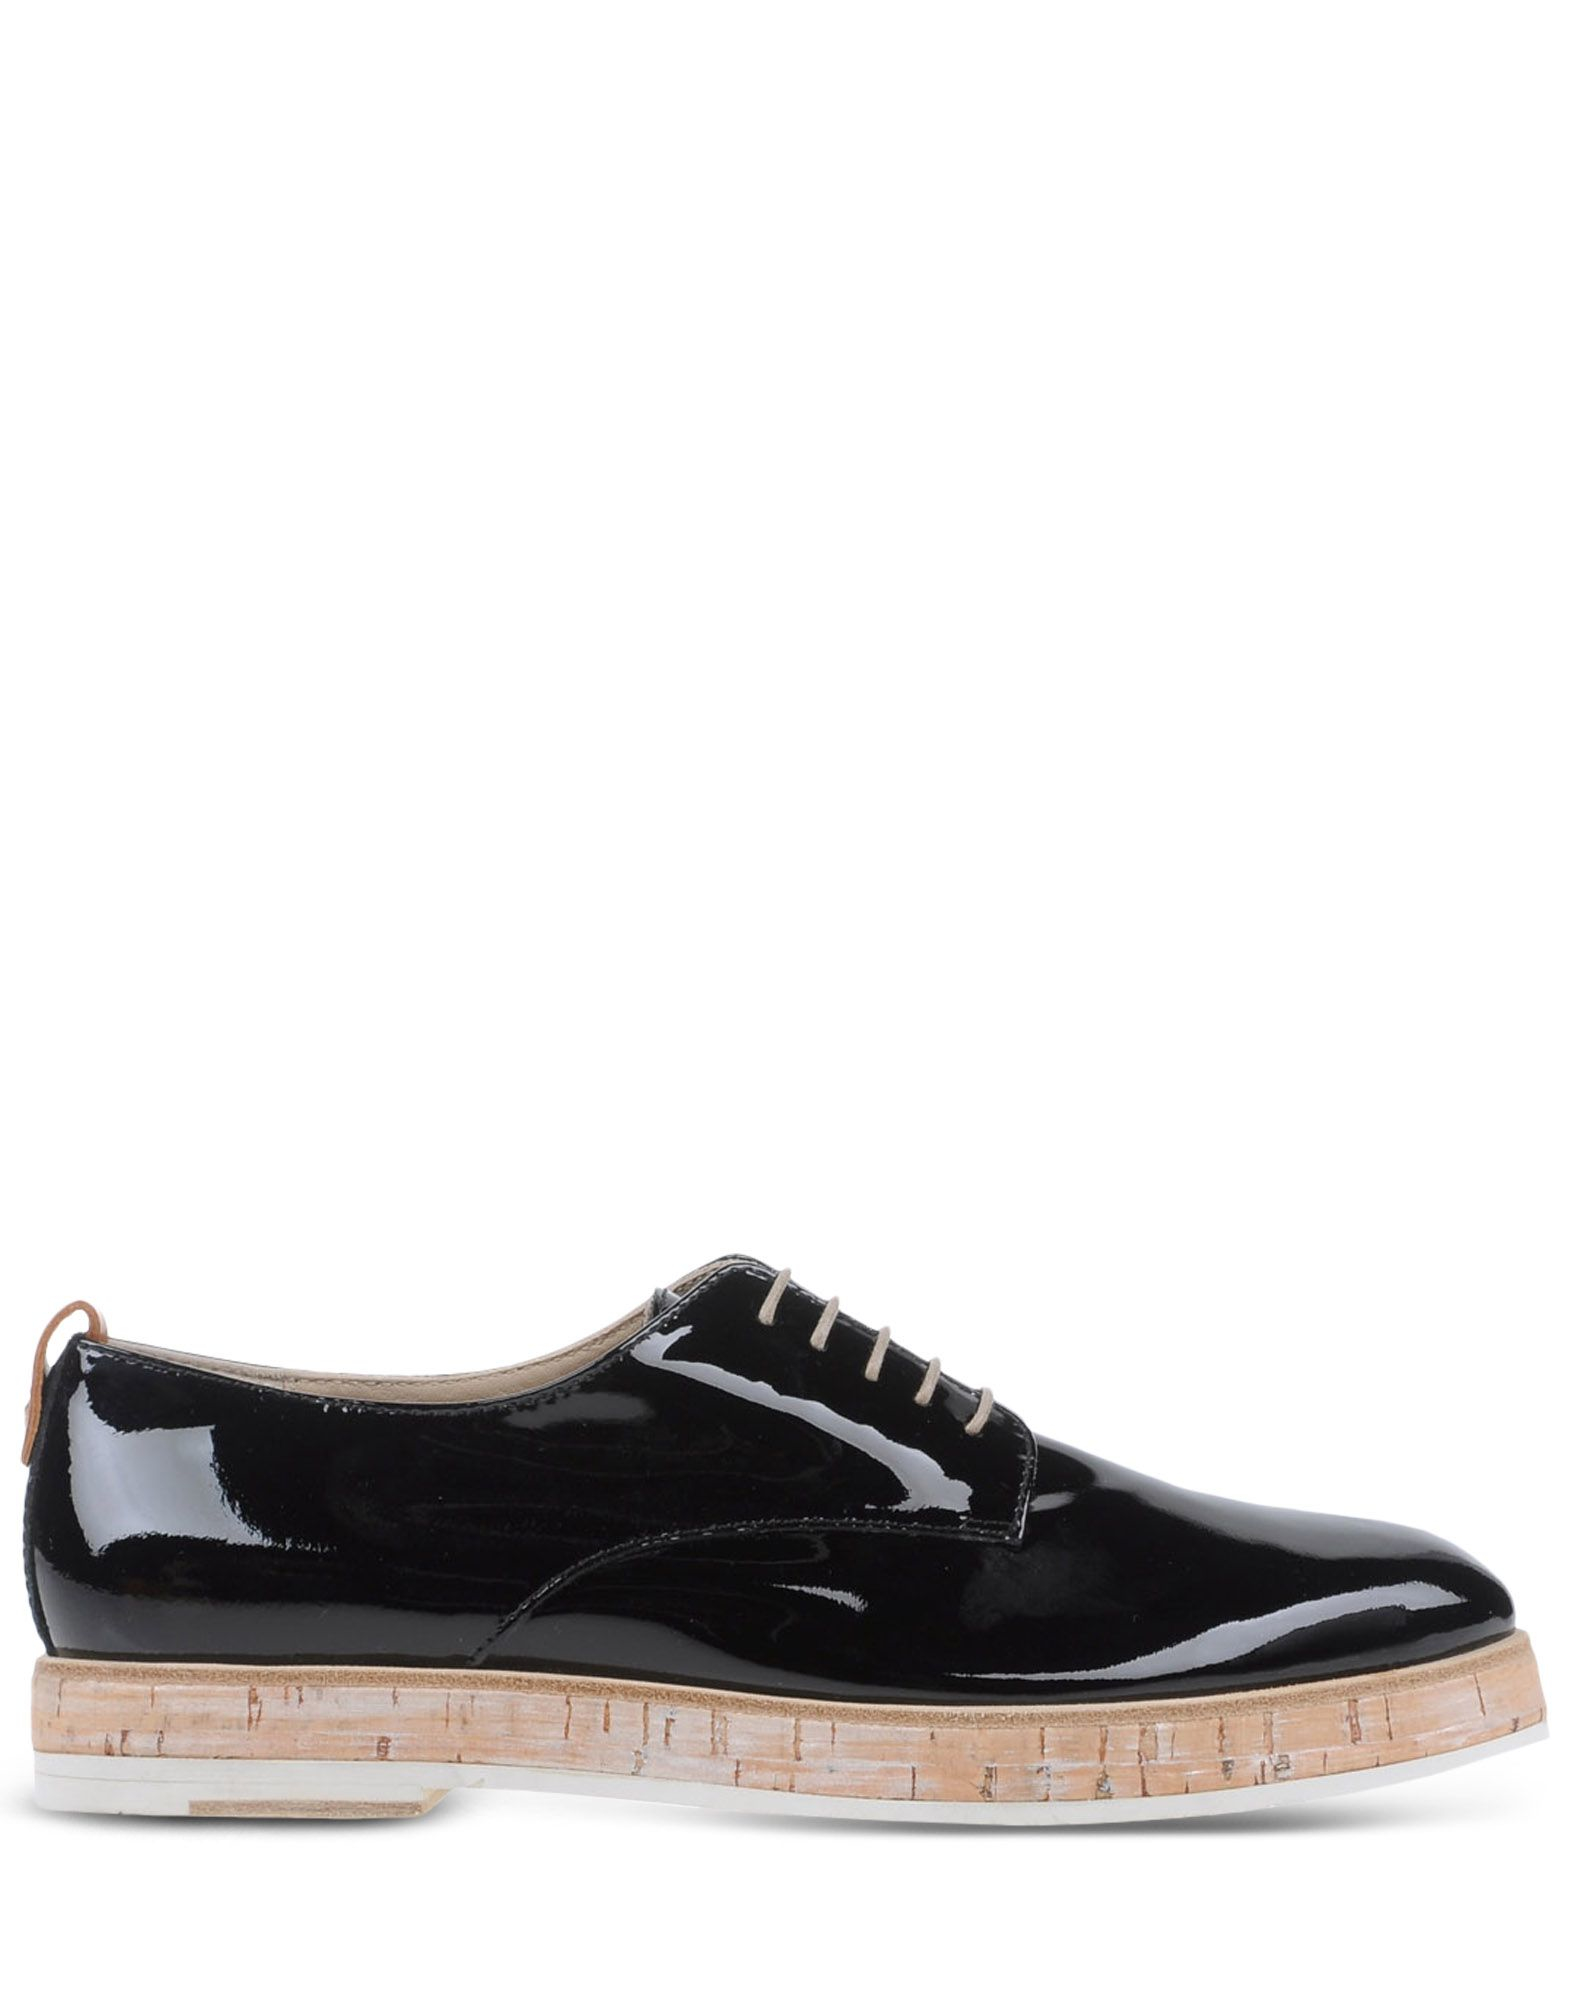 Agl Attilio Giusti Leombruni Patent-Leather Oxford Shoes in Black | Lyst